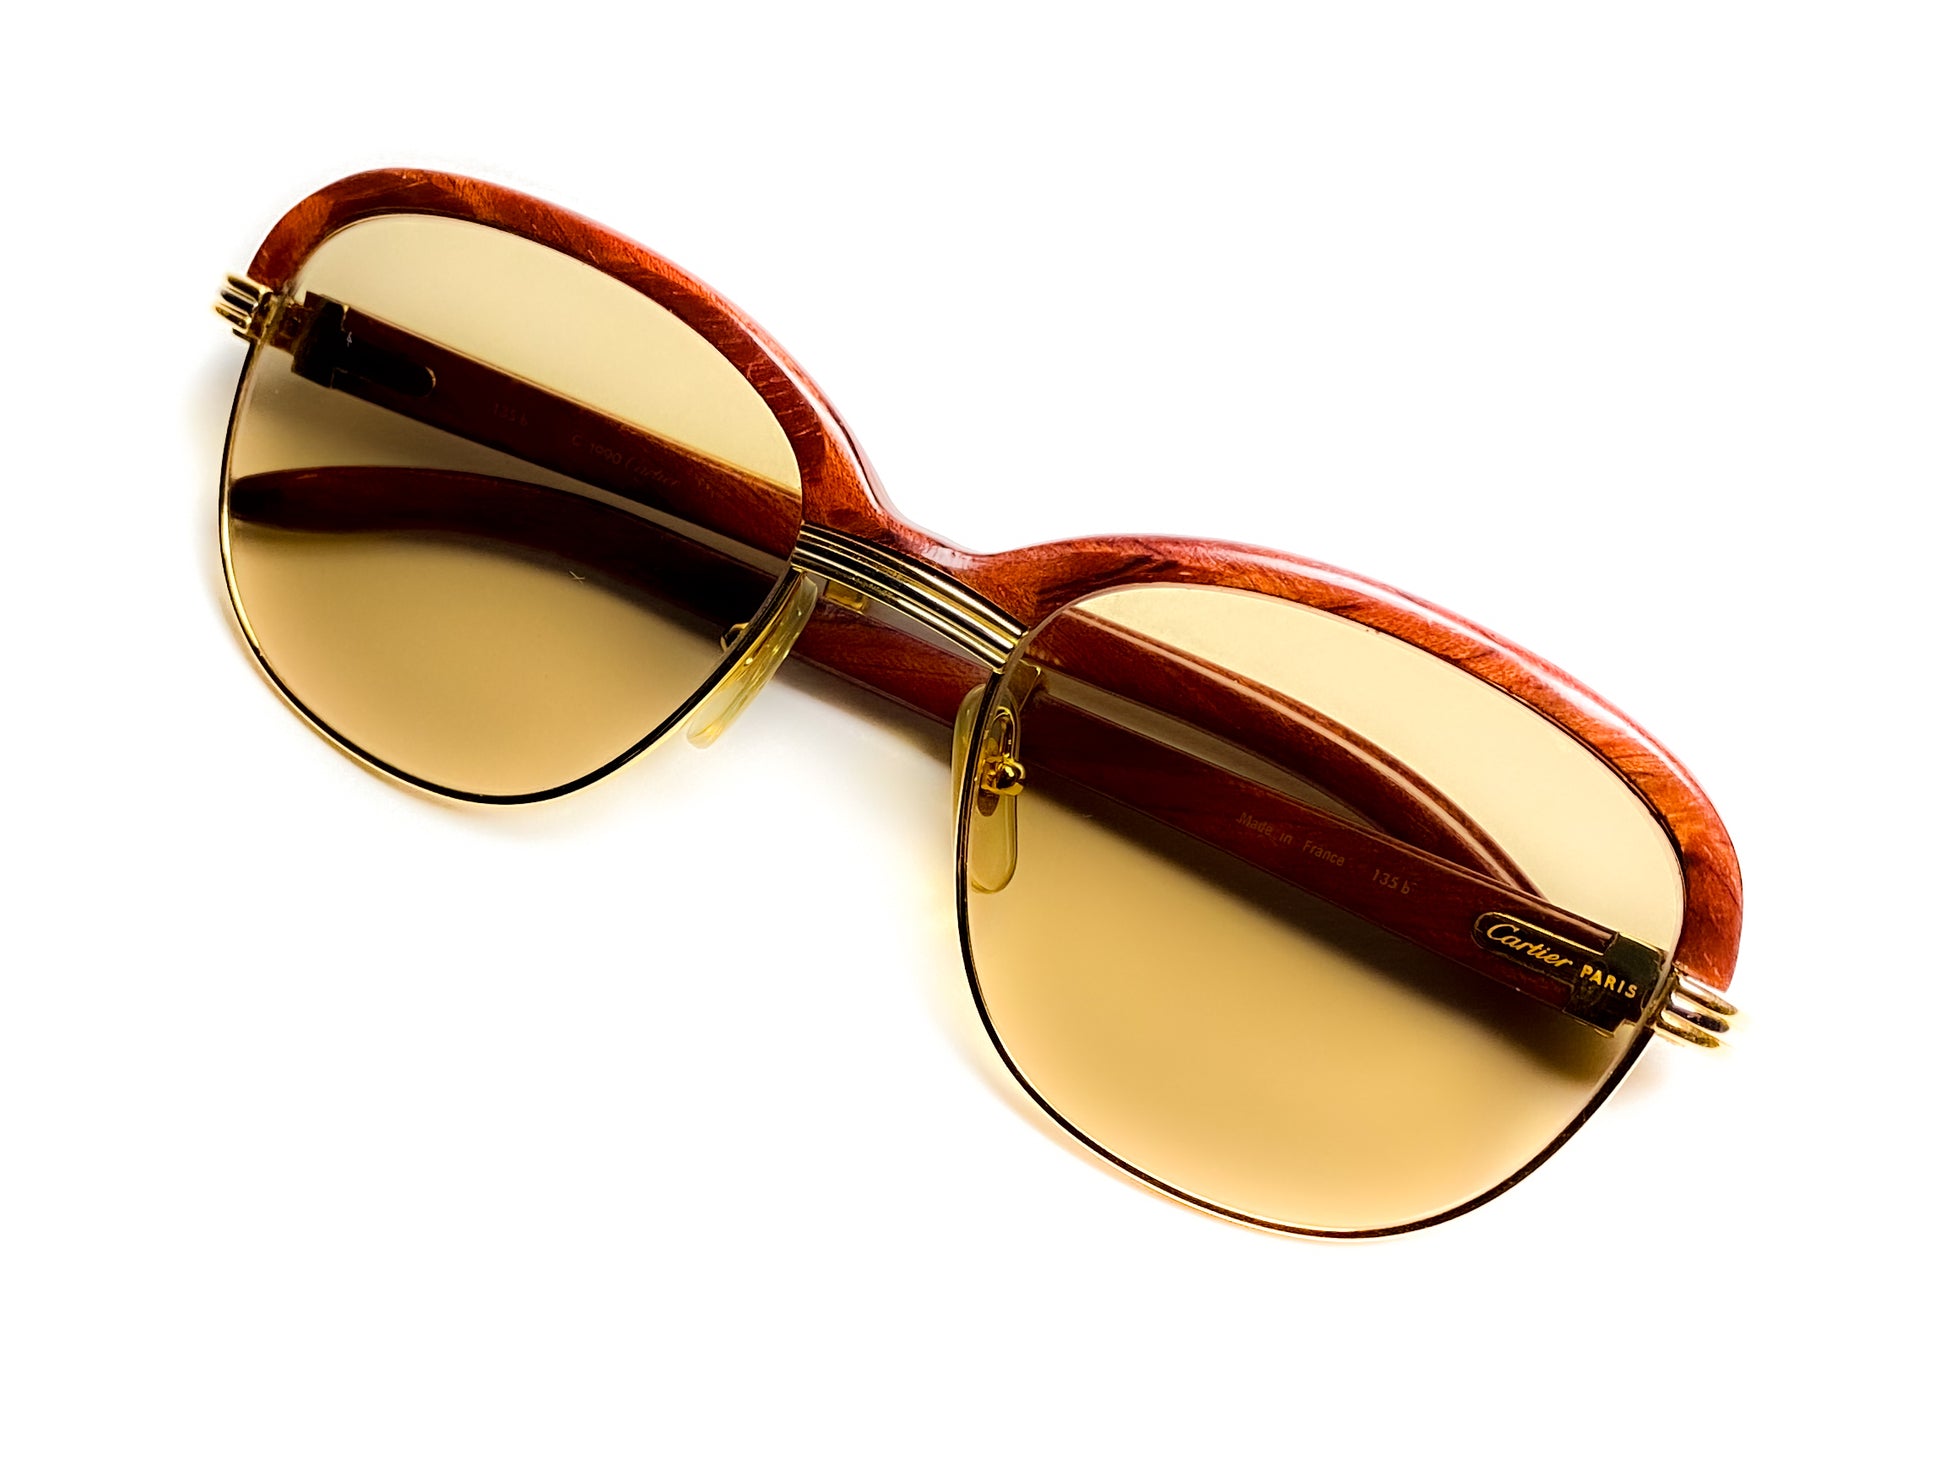 Cartier malmaison vintage bubinga wood sunglasses eyeglasses